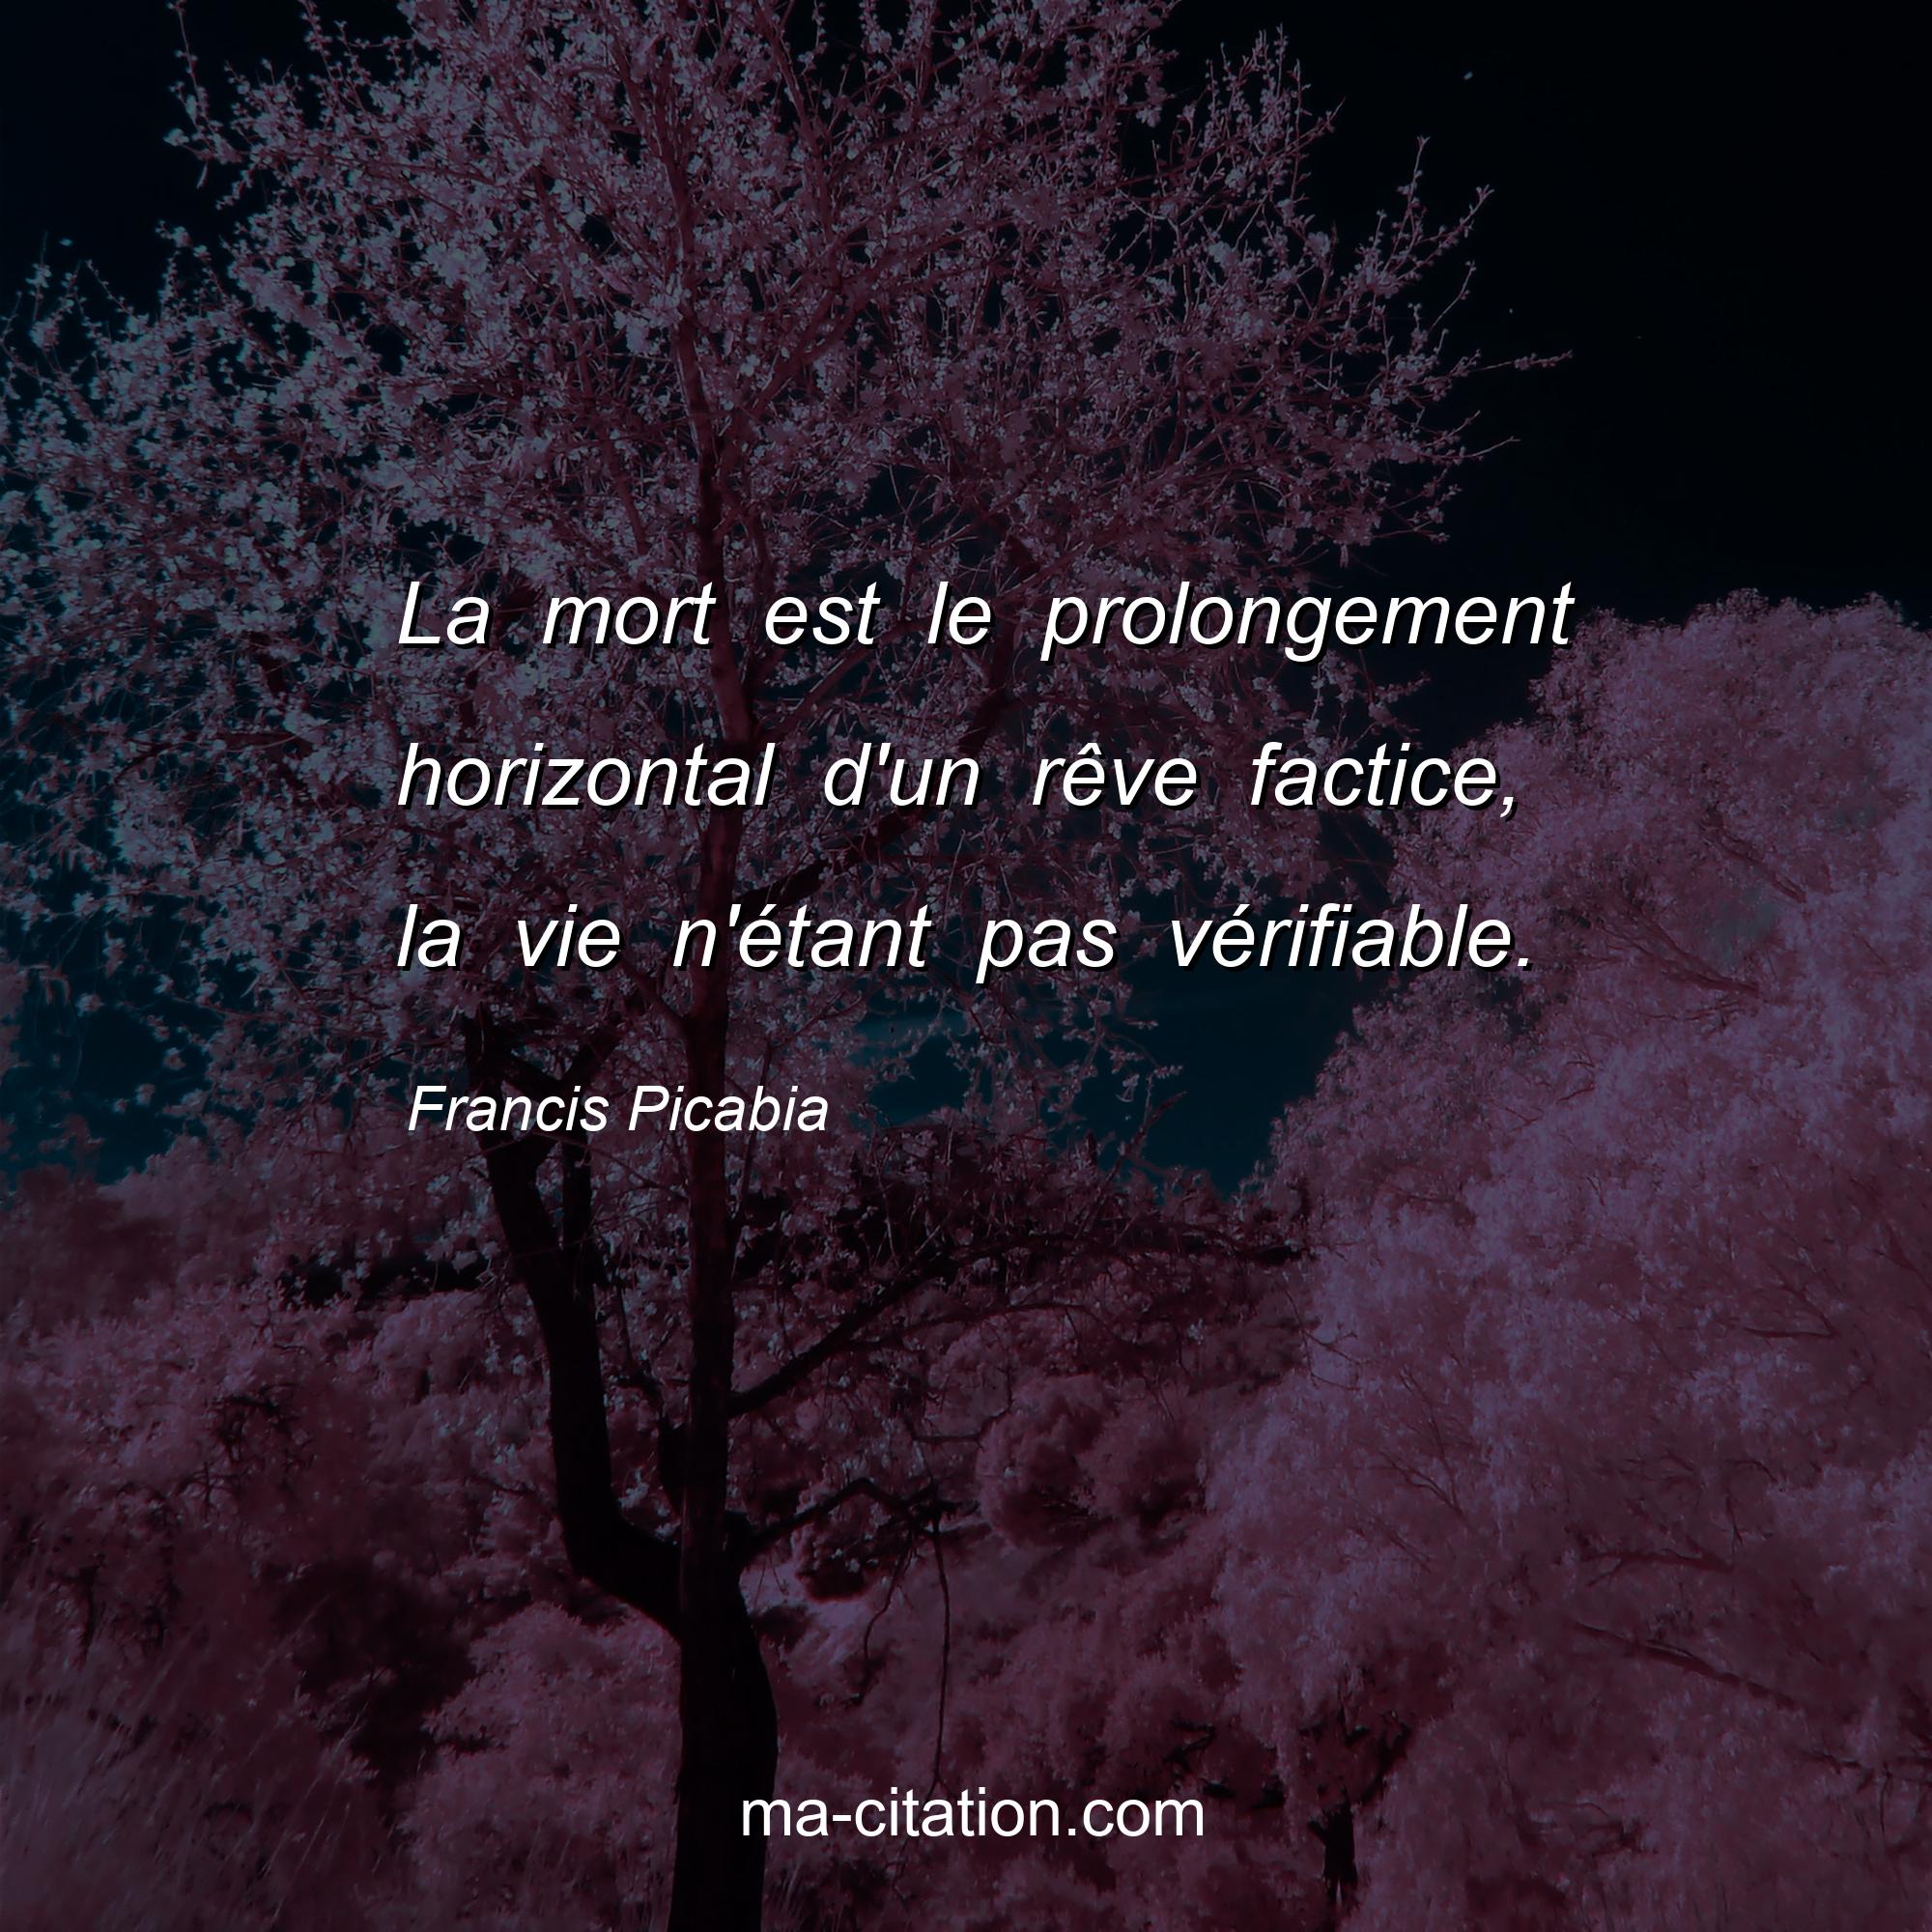 Francis Picabia : La mort est le prolongement horizontal d'un rêve factice, la vie n'étant pas vérifiable.